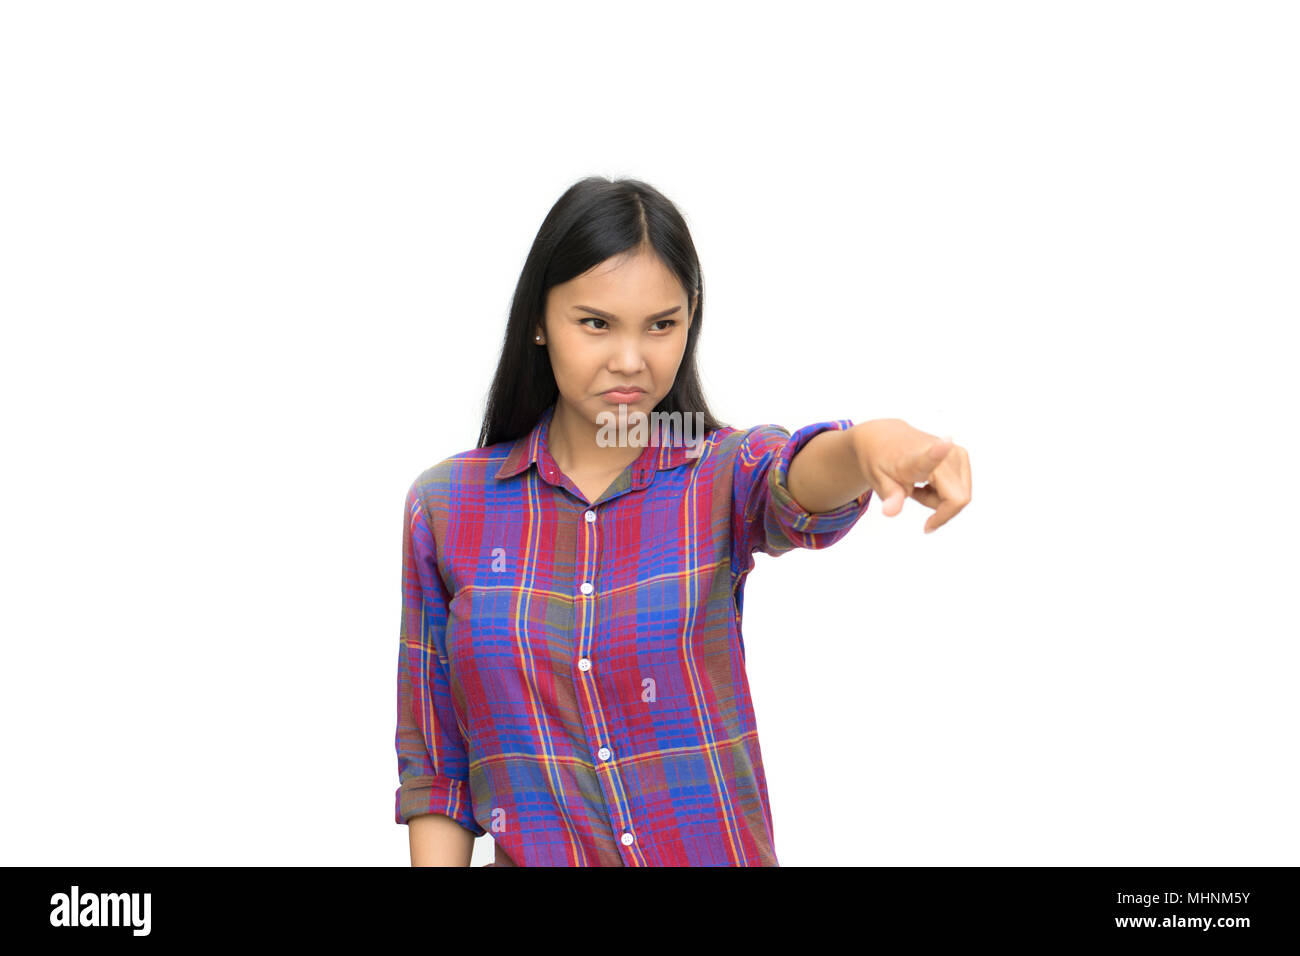 Portrait von jungen asiatischen Mädchen pout und zeigen, hartnäckige Jugendmädchen suchen wütend oder gereizt. Stockfoto